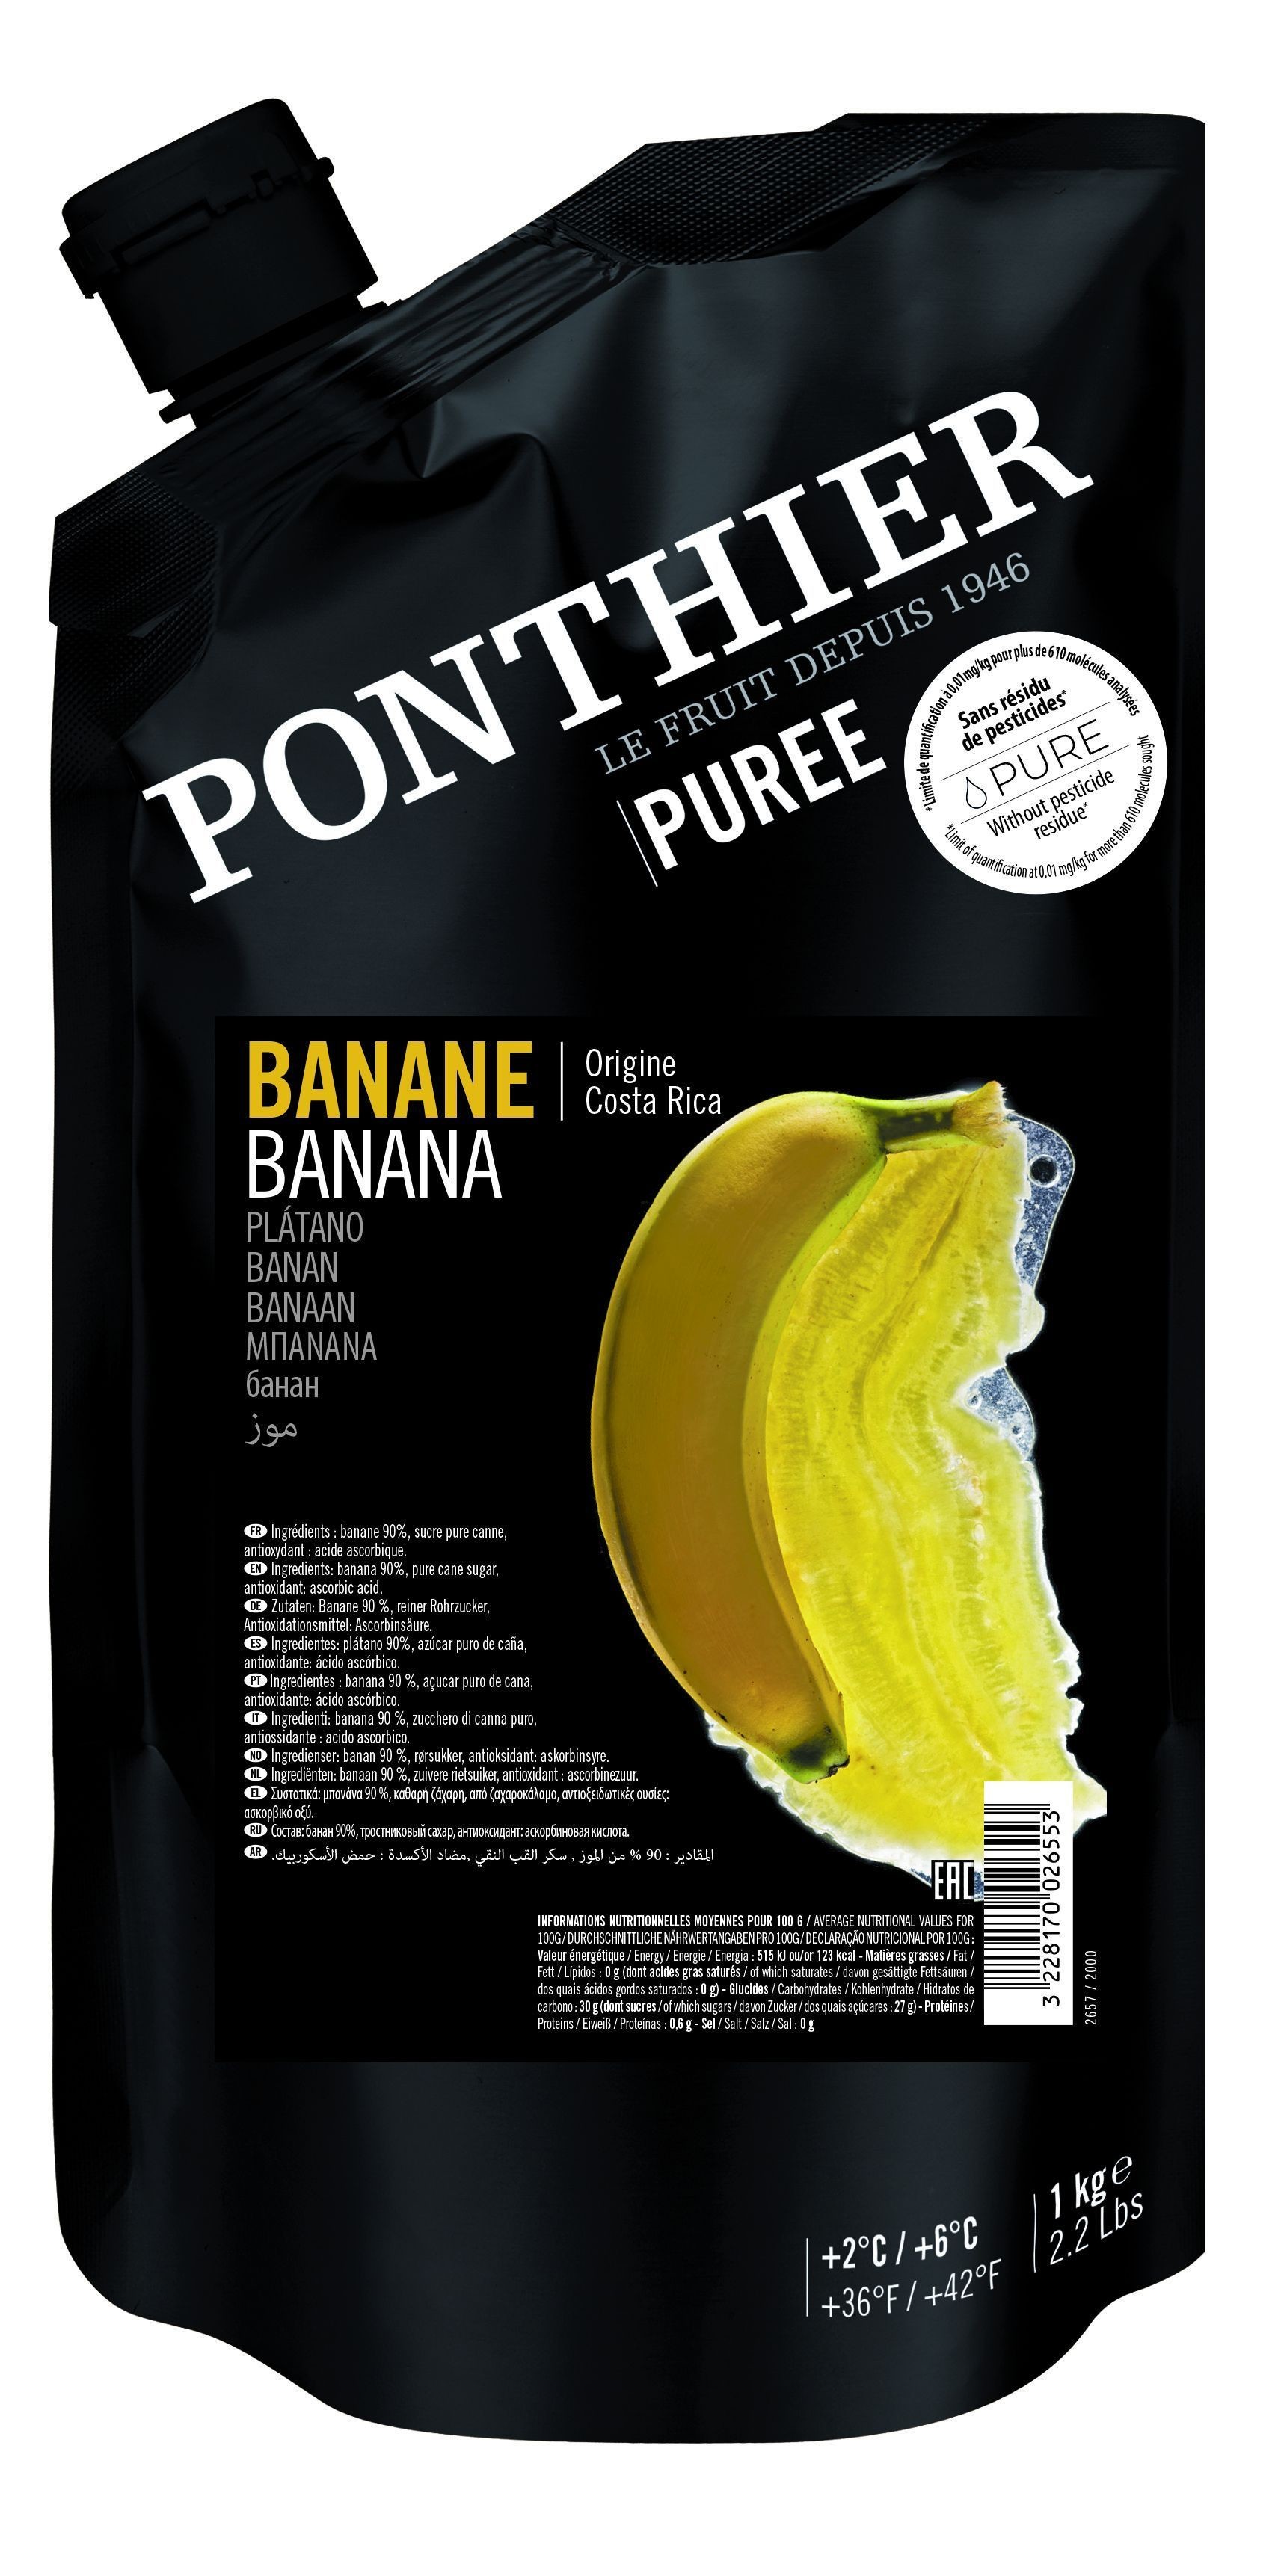 Ponthier Purées de Fruit Bananes 1kg